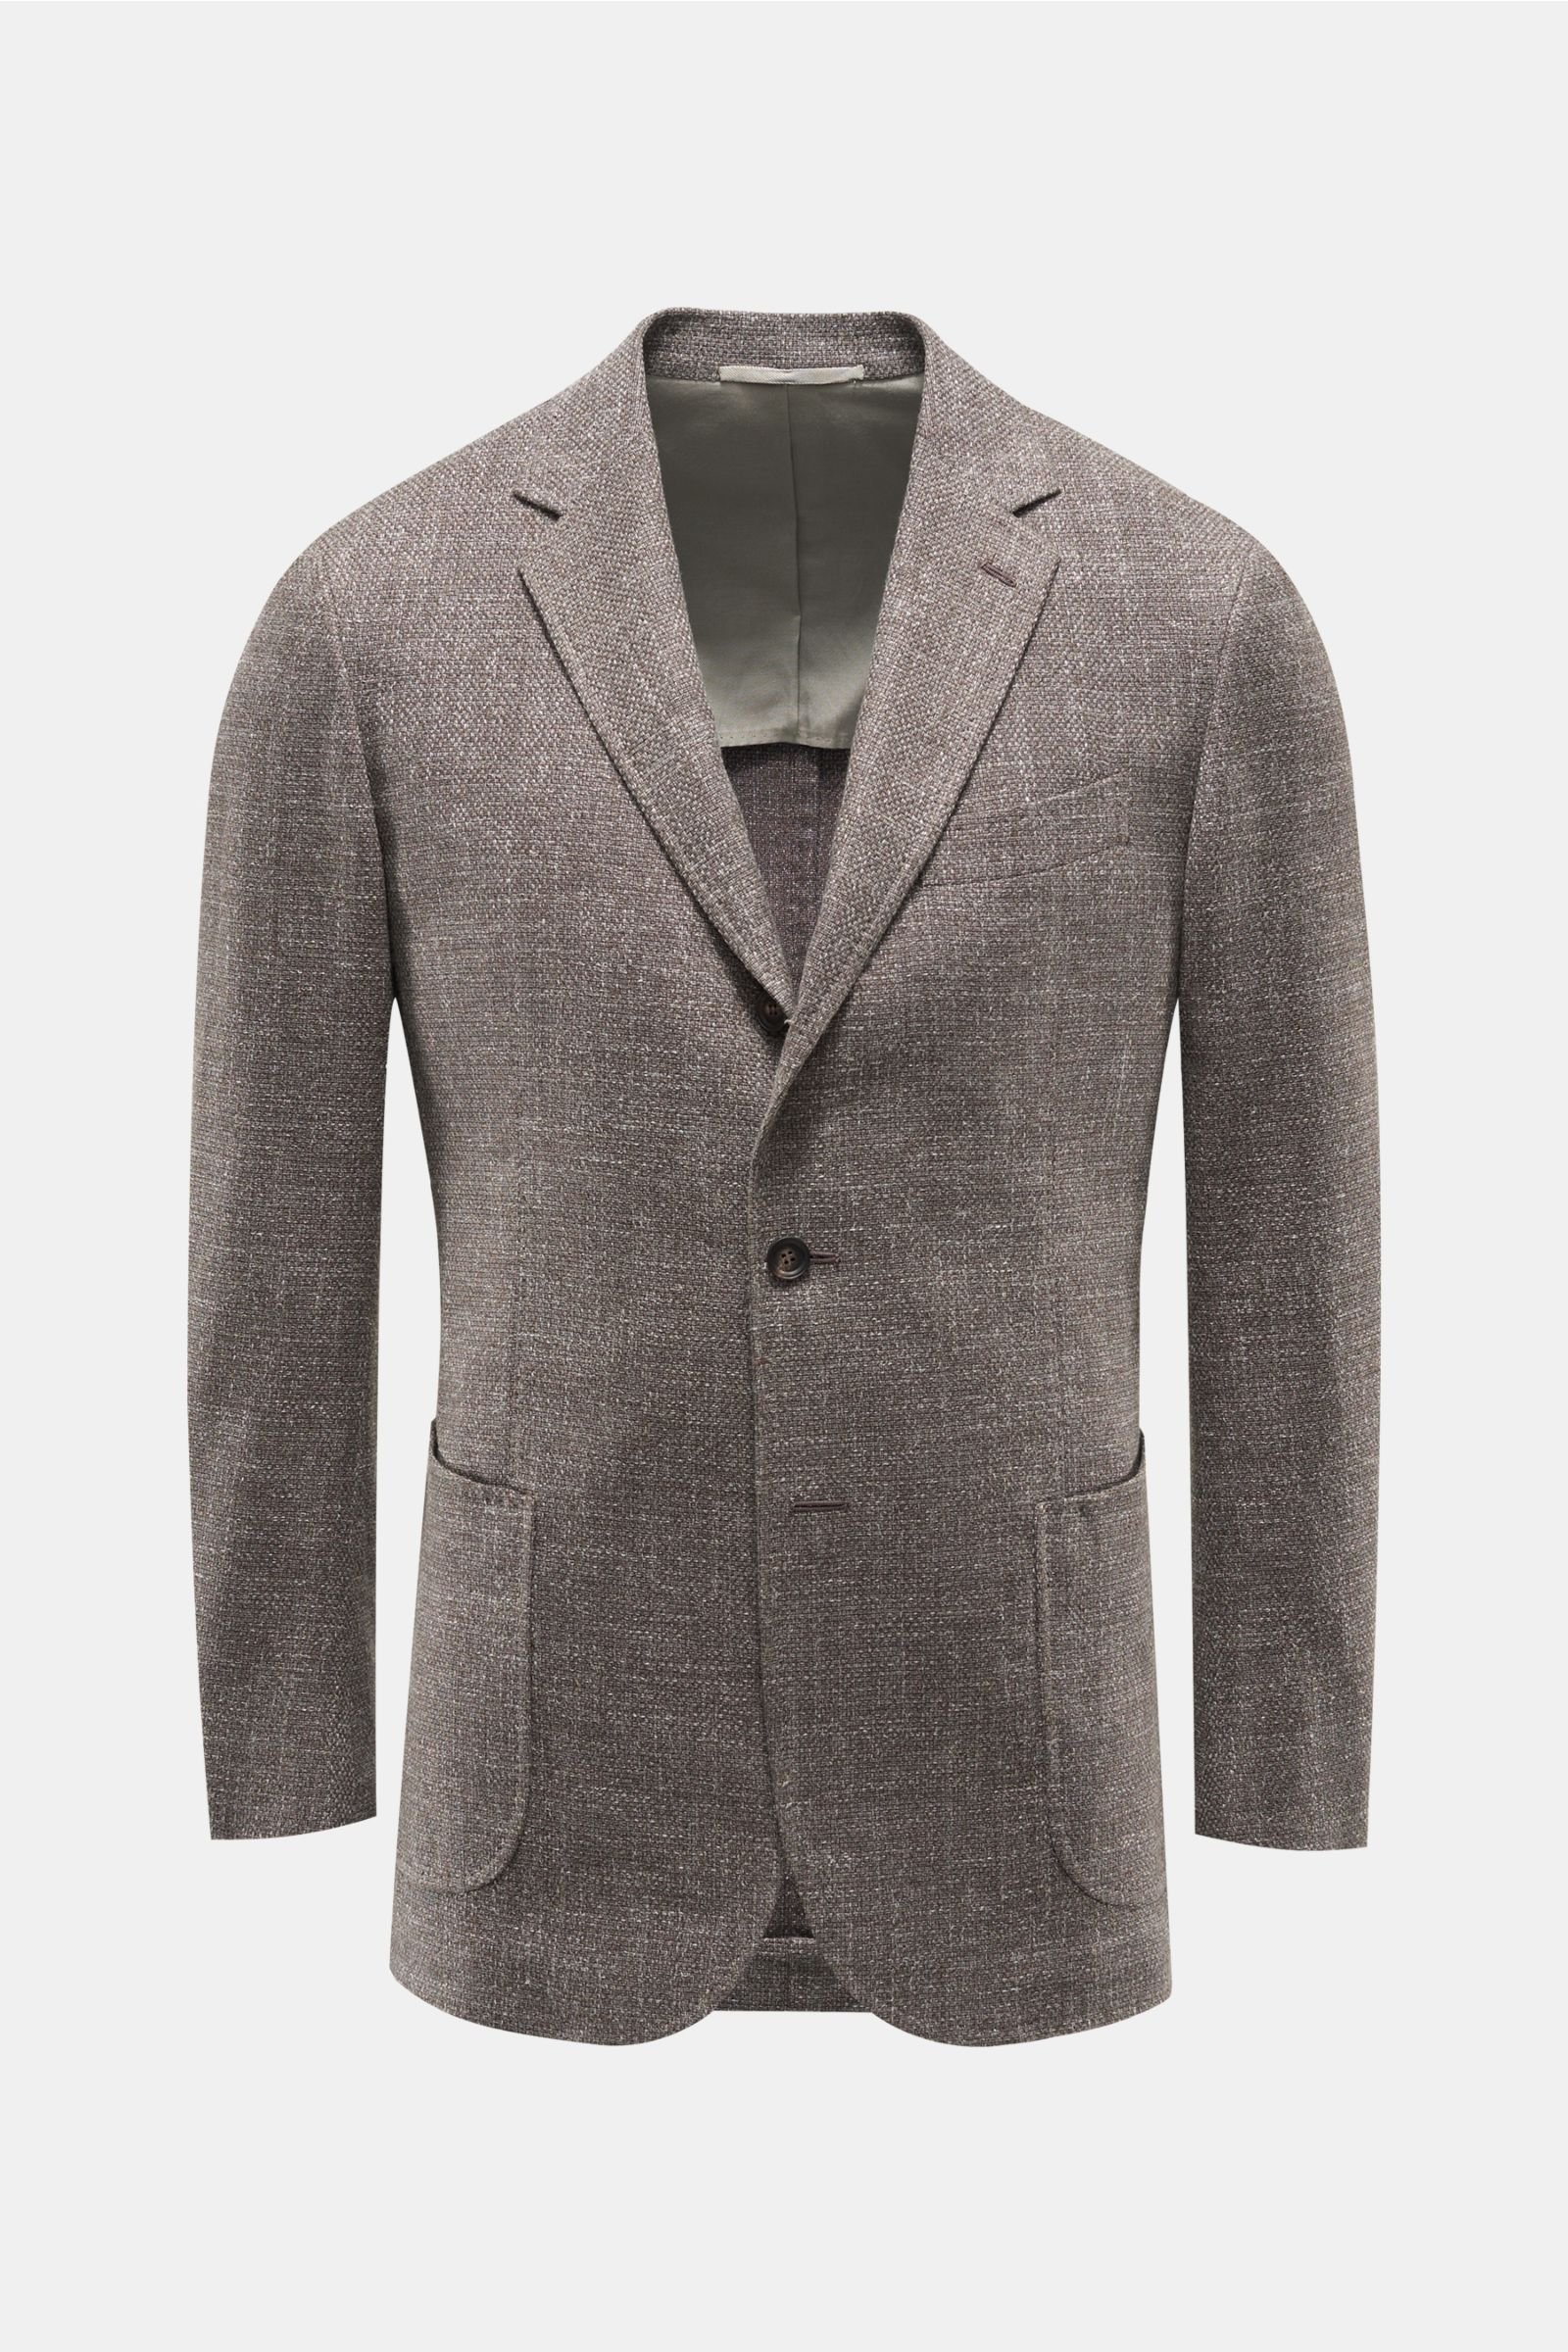 Smart-casual jacket 'Alex' grey-brown